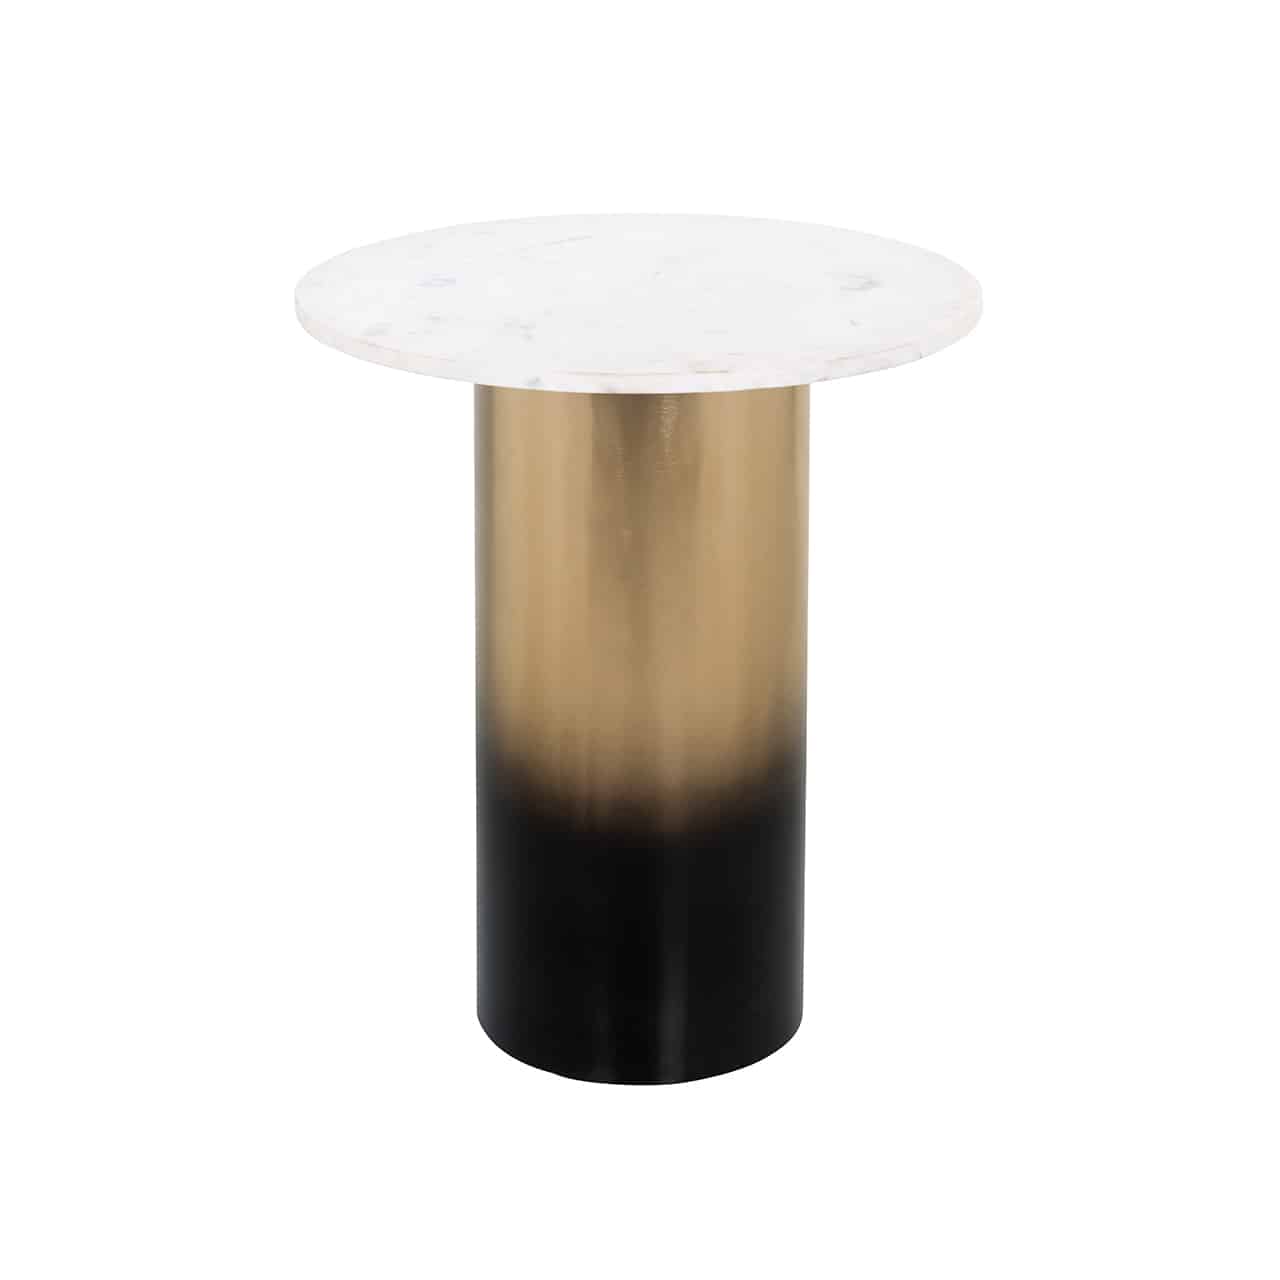 Moderner Beistelltisch; auf einem von dunklem braun nach gold übergehenden, zylinderförmigen  Fuß liegt eine runde Tischplatte aus weißem Marmor.